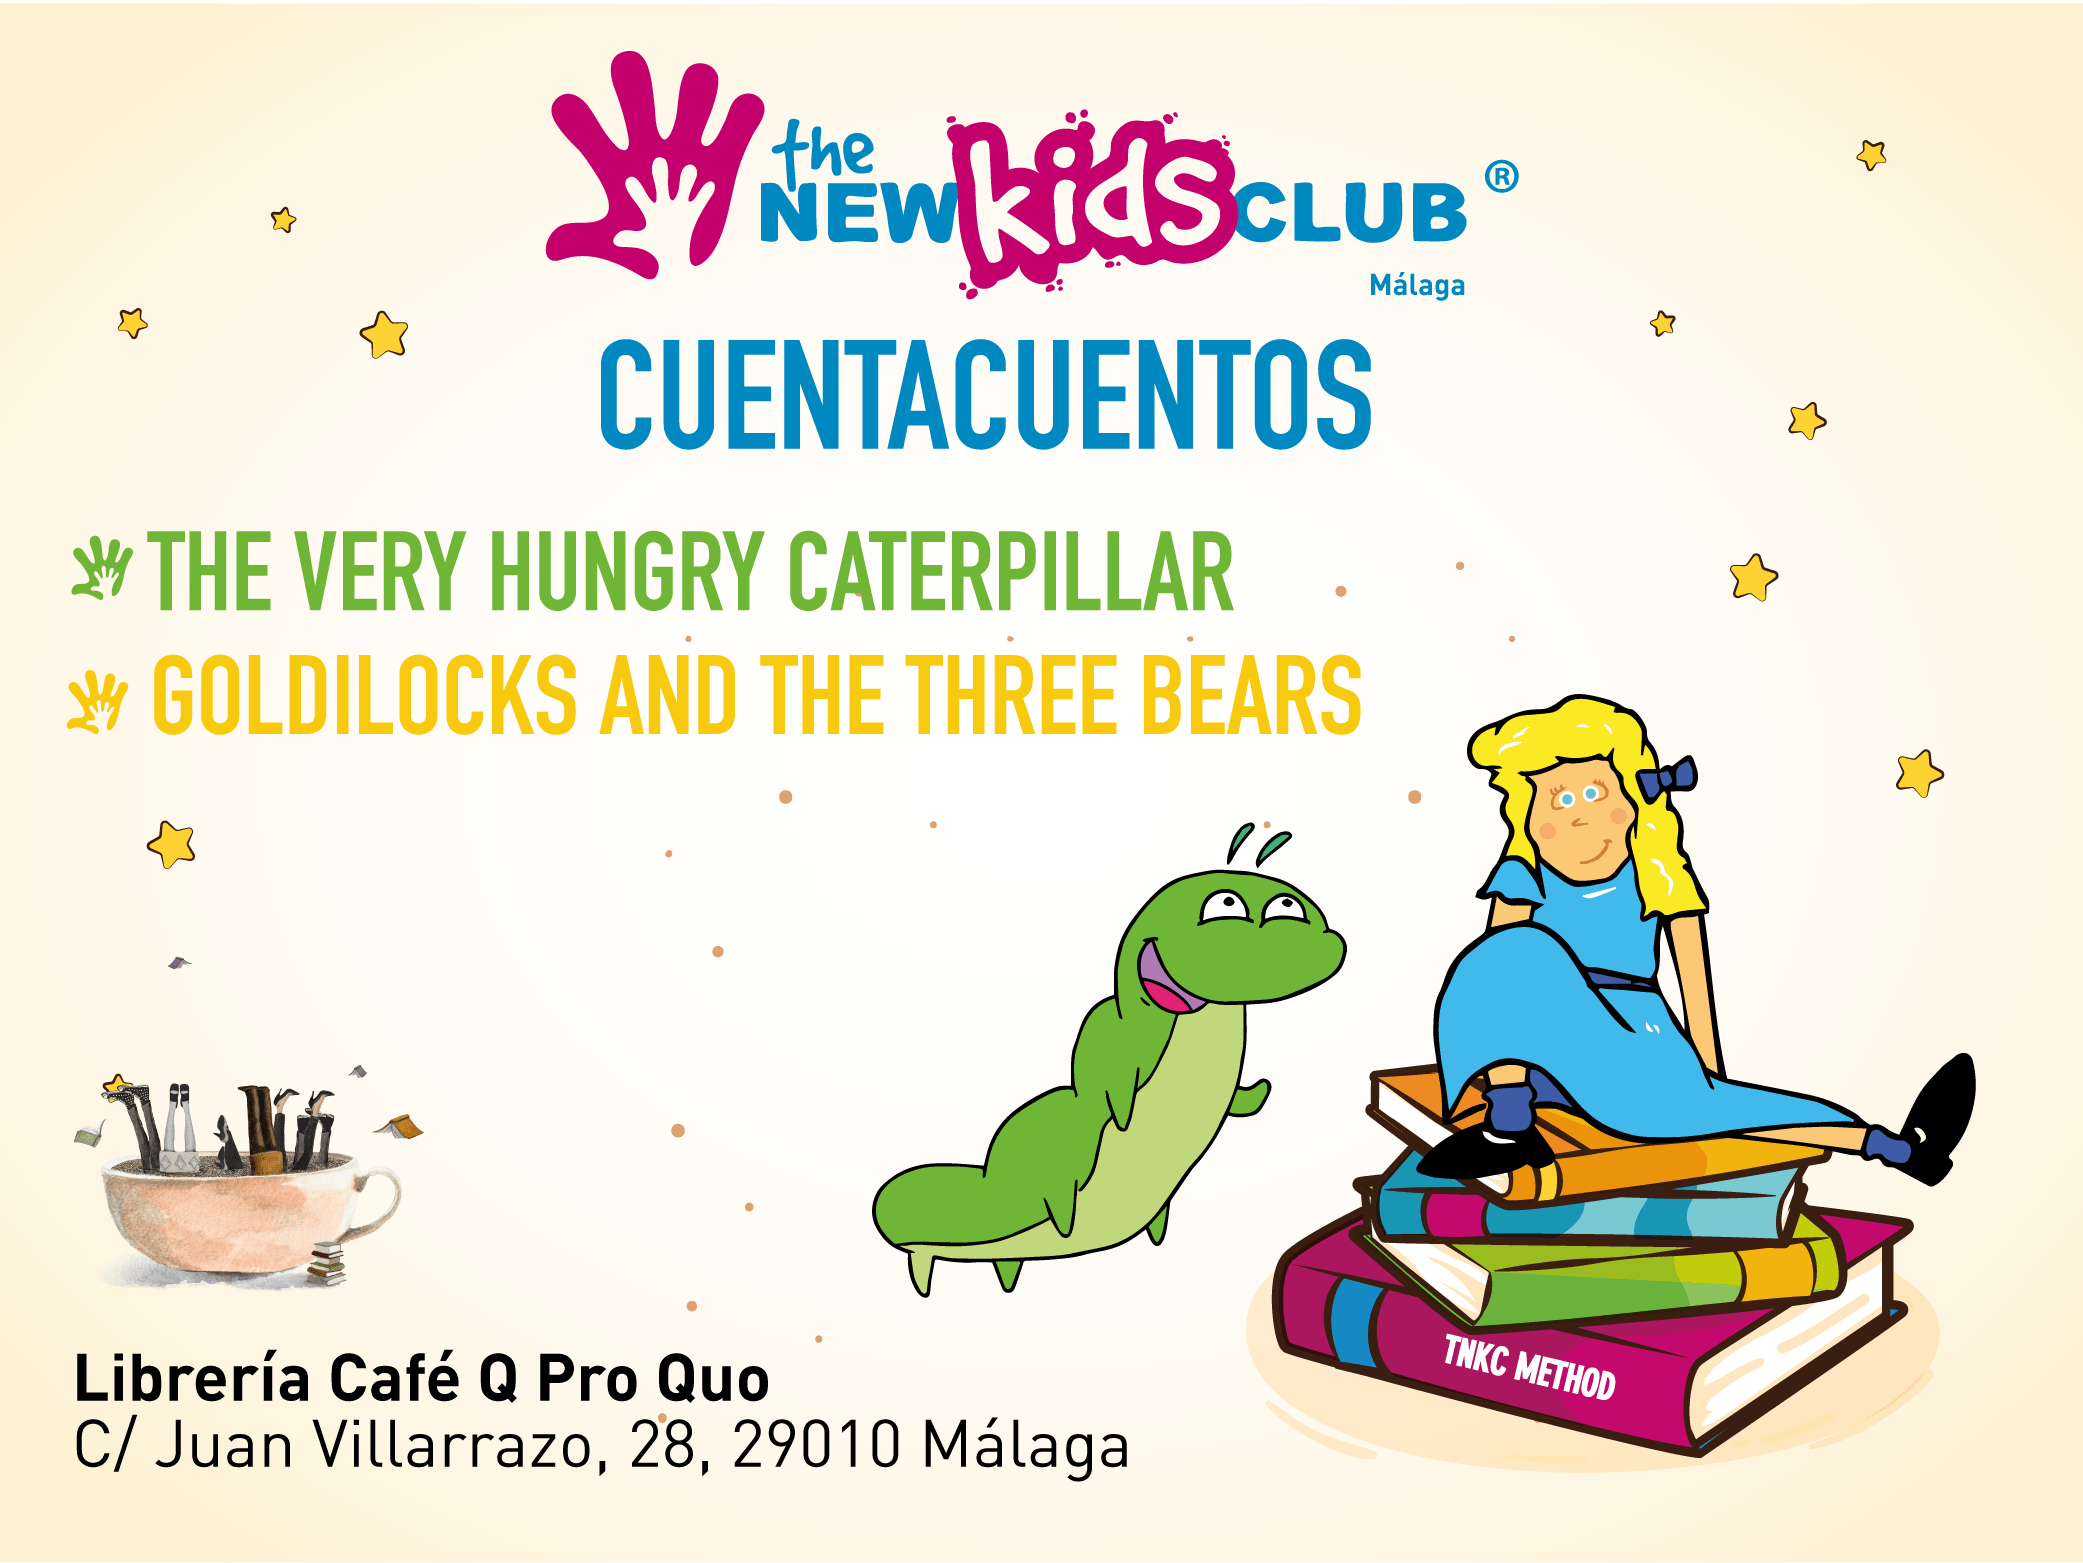 The New Kids Club organiza un cuentacuentos en inglés gratuito en Teatinos